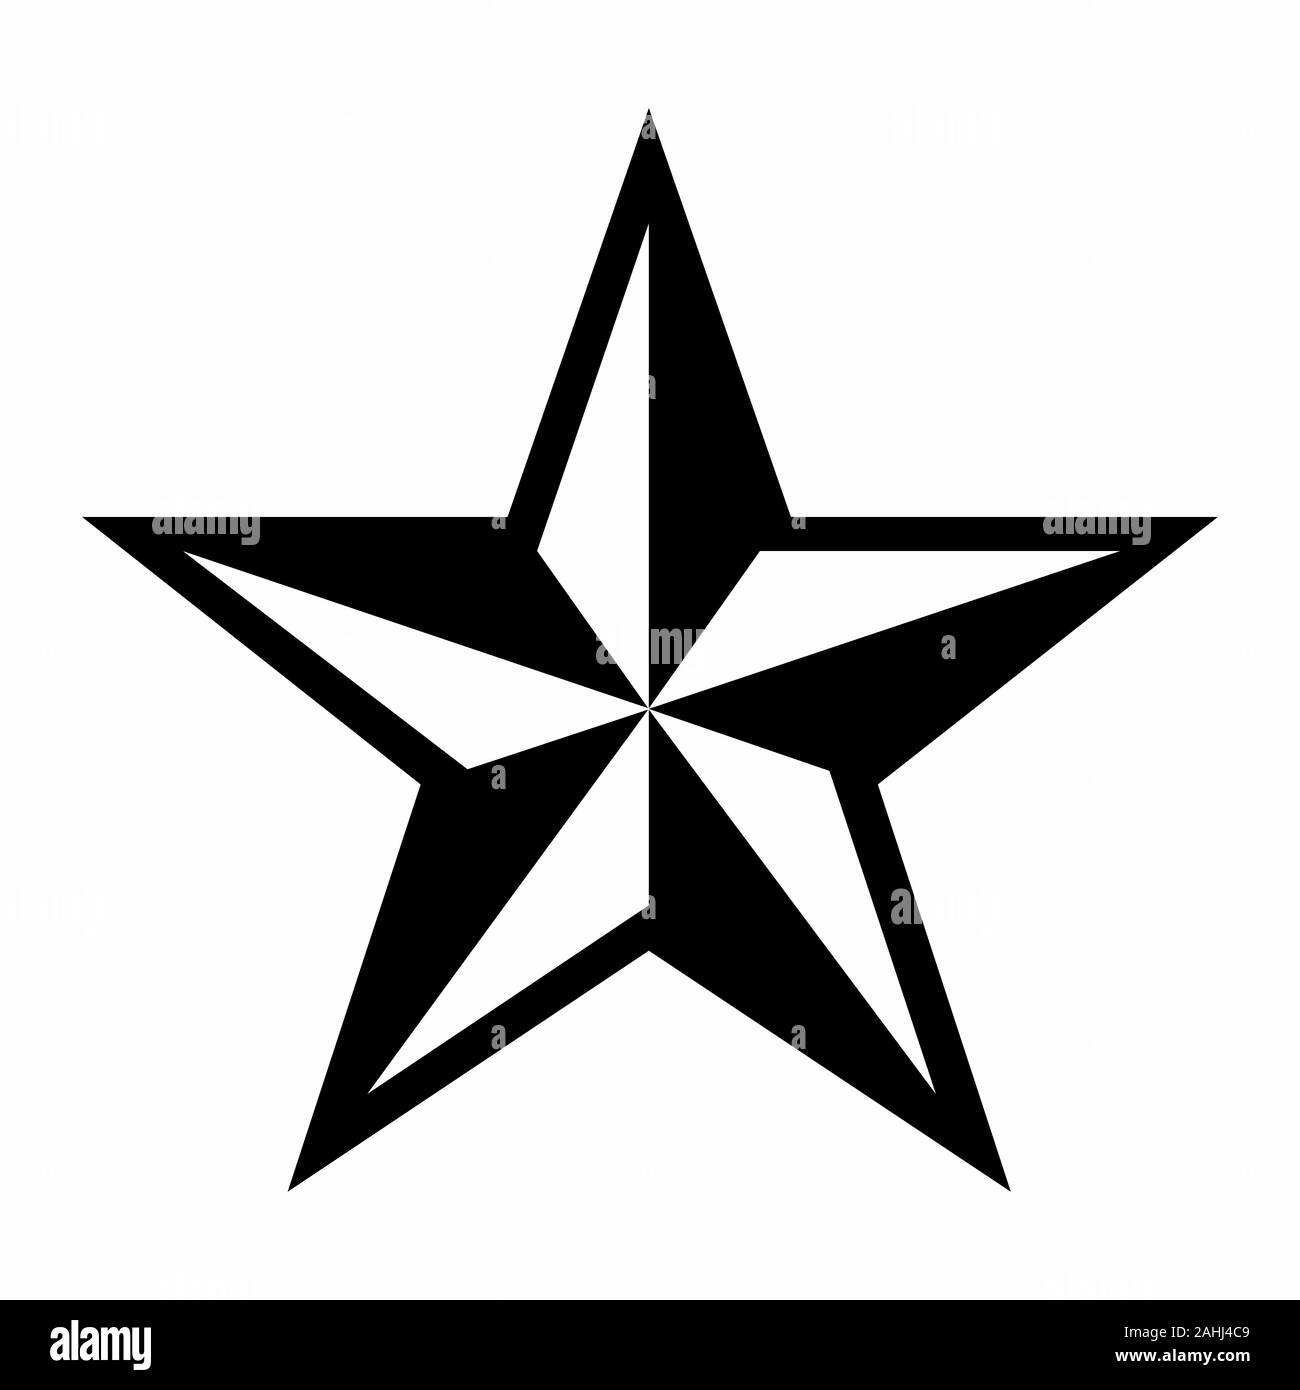 Diseño estrella de 5 puntas Imágenes de stock en blanco y negro - Alamy